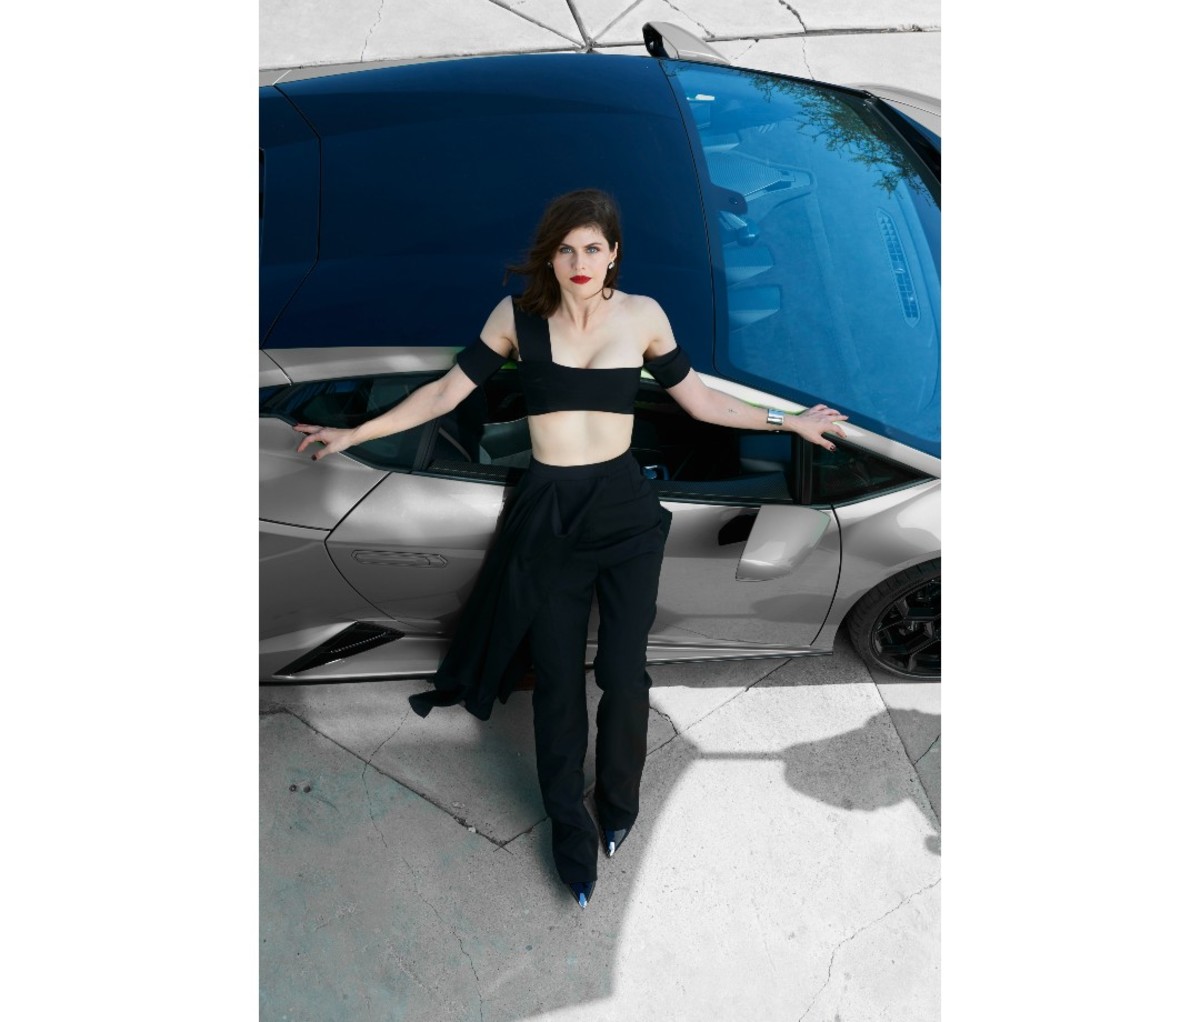 Alexandra Daddario posing by a car